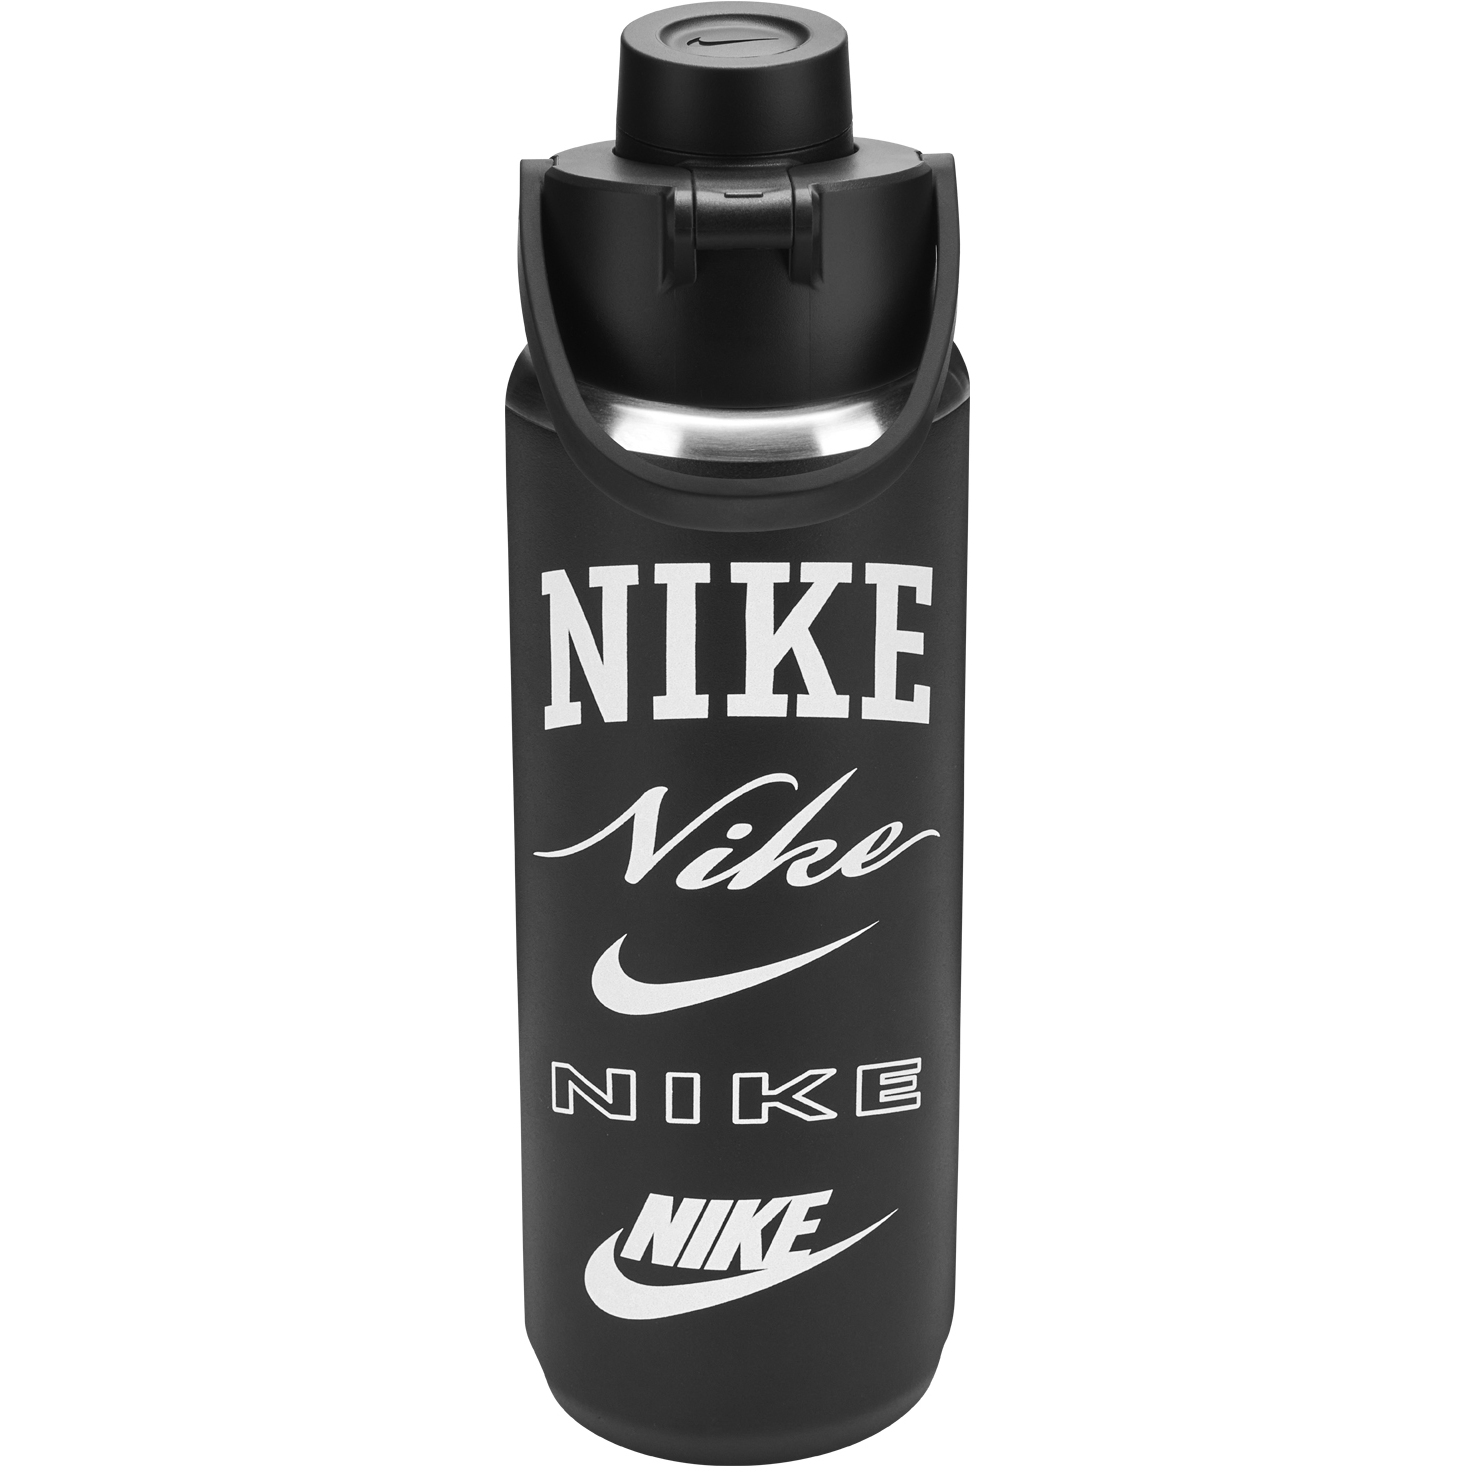 Productfoto van Nike Roestvrij Staal Recharge Drinkfles 24 oz / 709ml - zwart/zwart/wit/wit 087